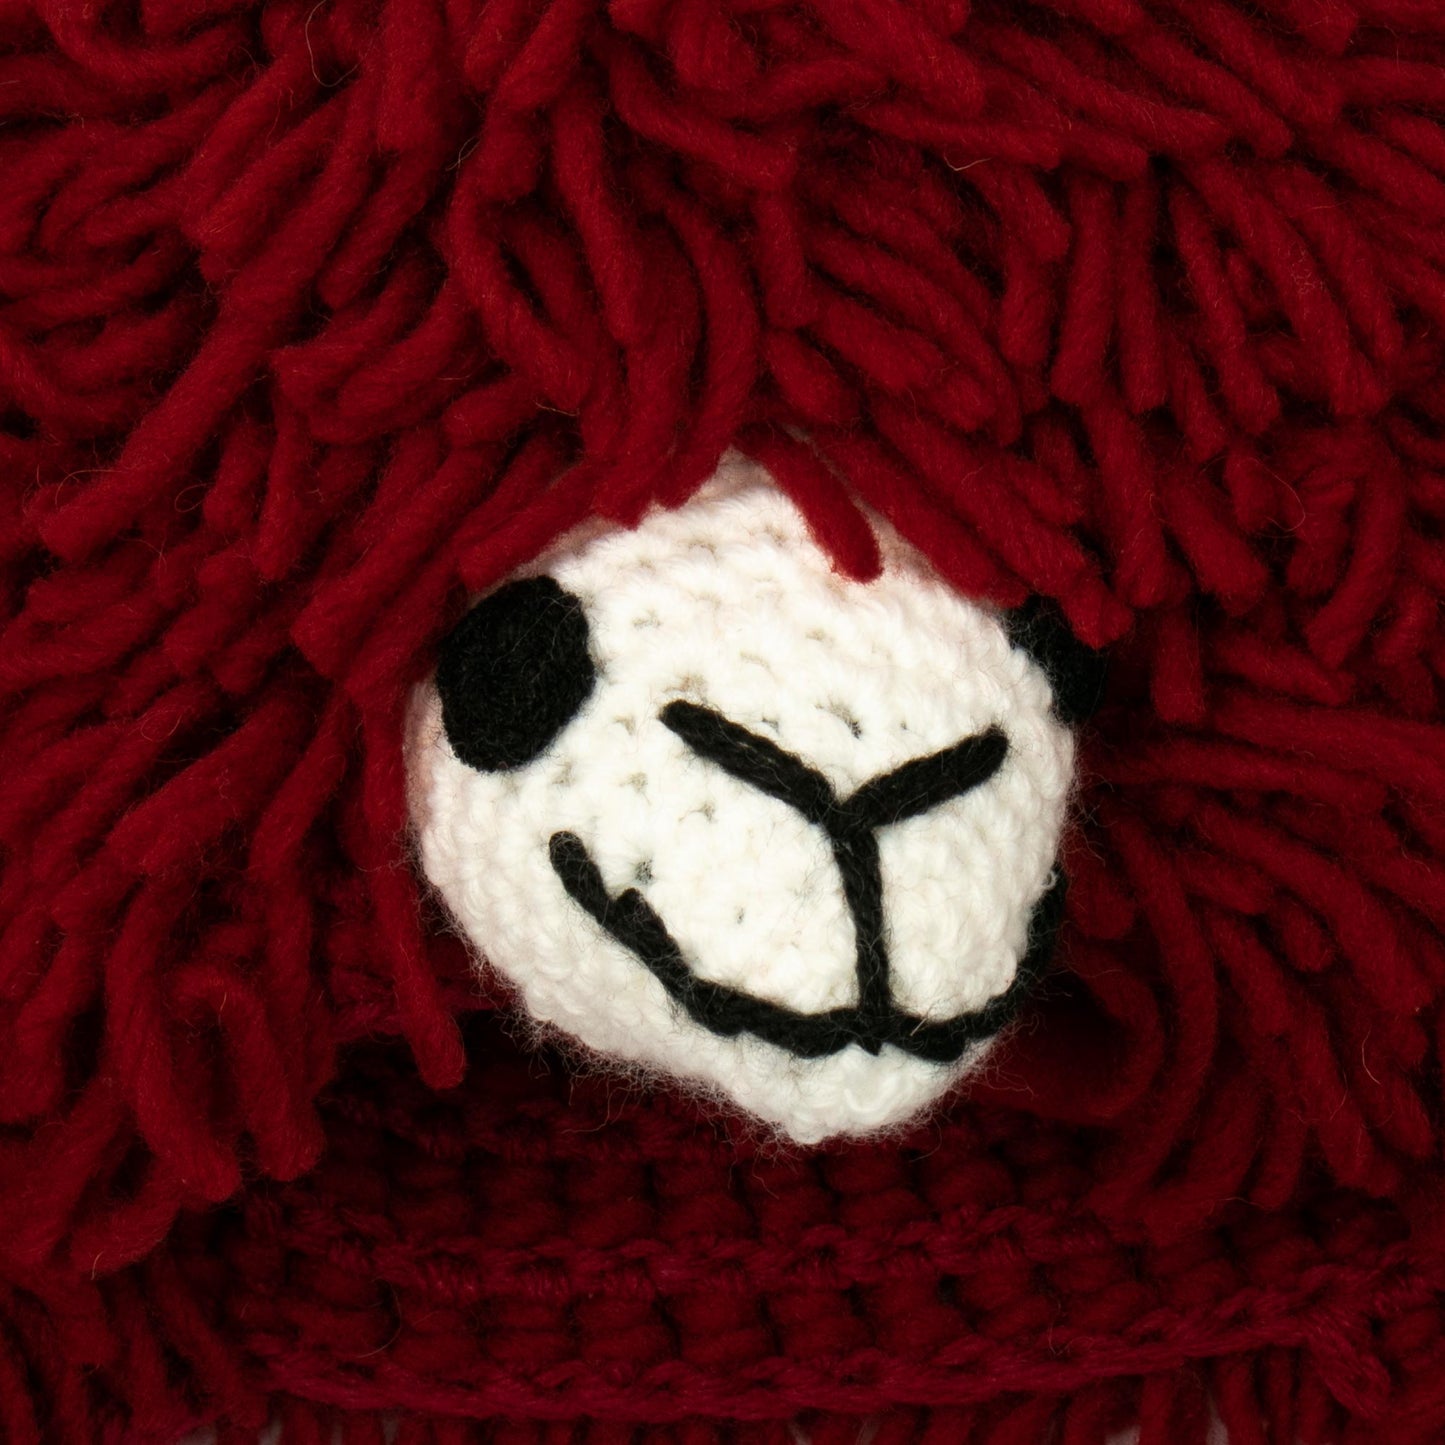 Smiling Llama Furry Red Llama Beanie Hat from Peru